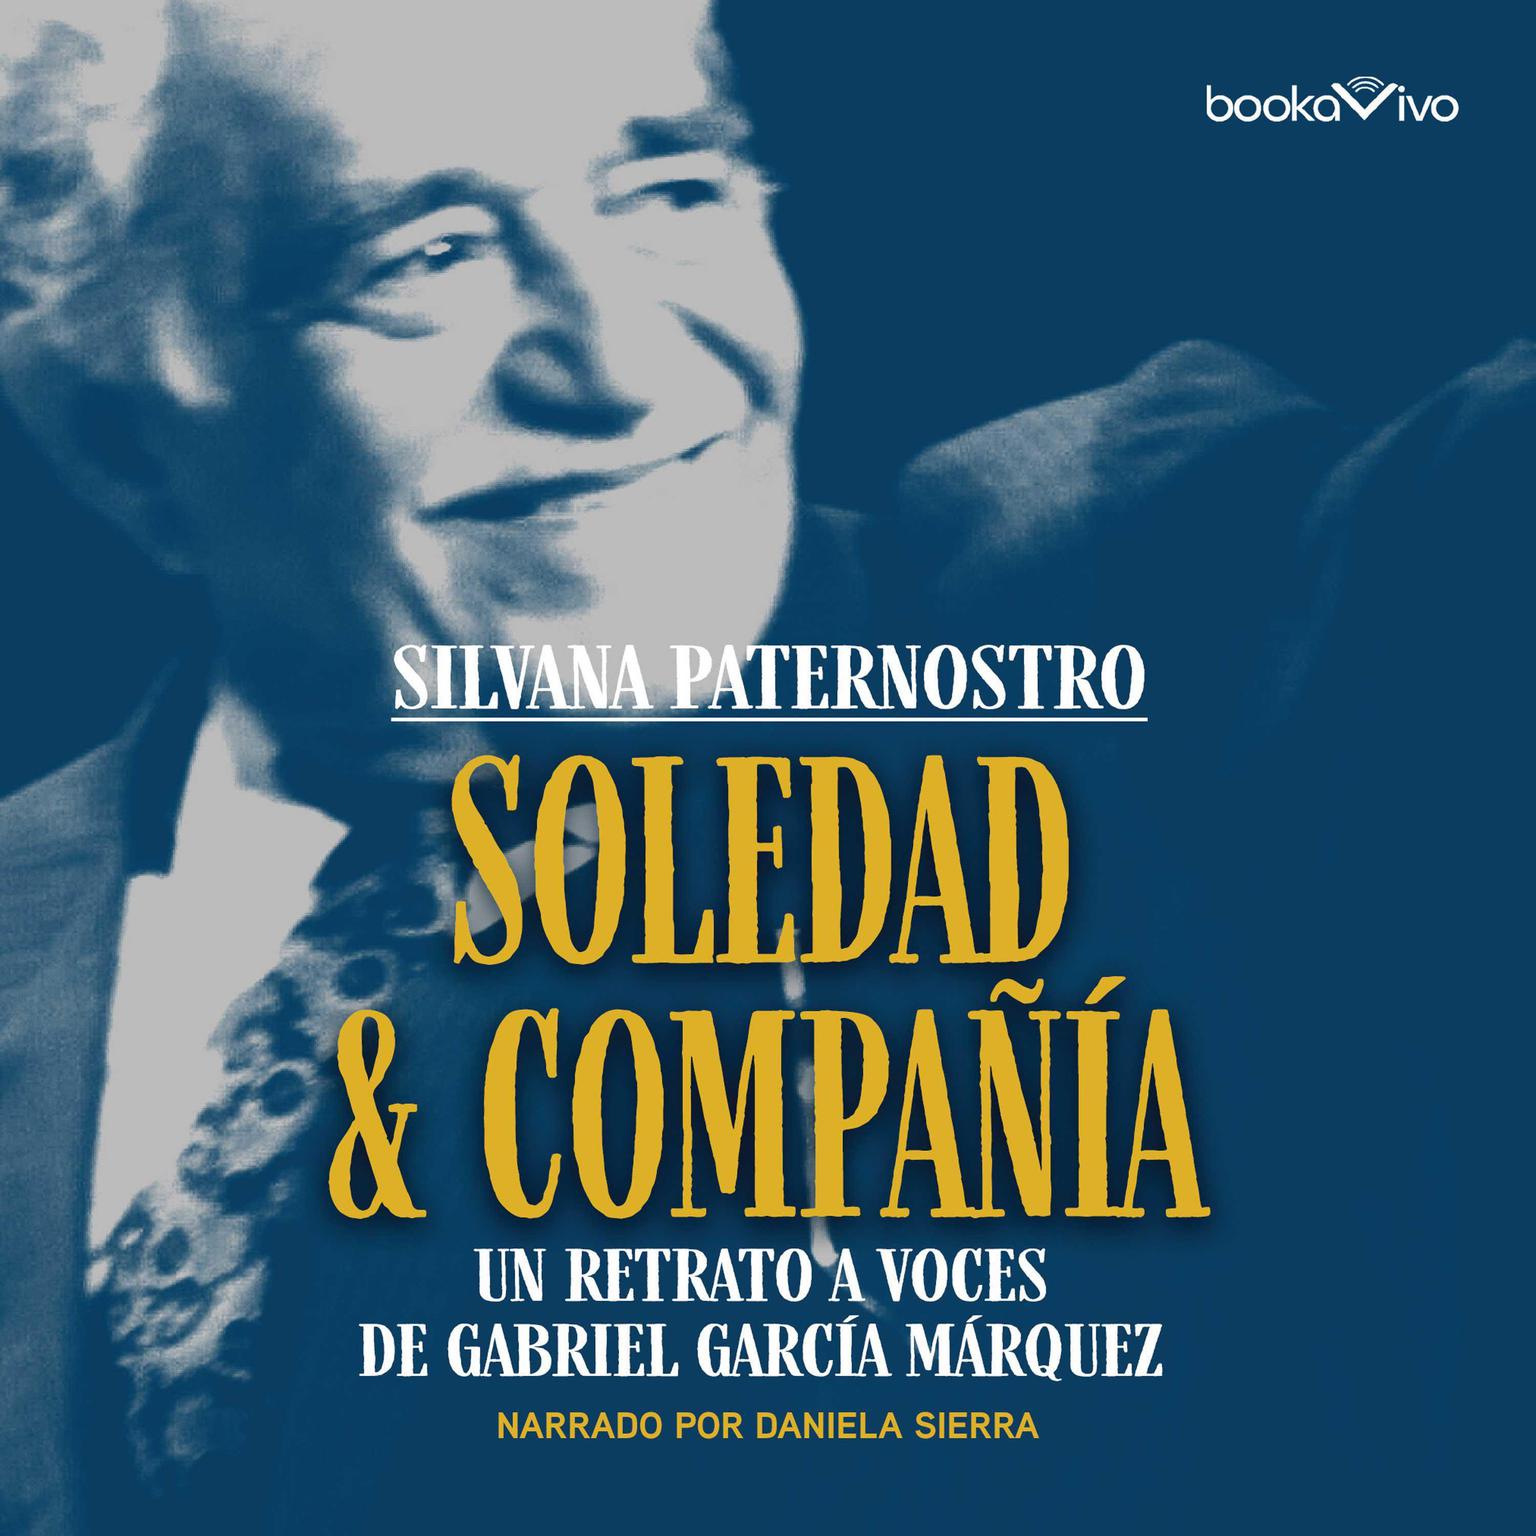 Soledad & Compañía: Un retrato a voces de Gabriel García Márquez Audiobook, by Silvana Paternostro